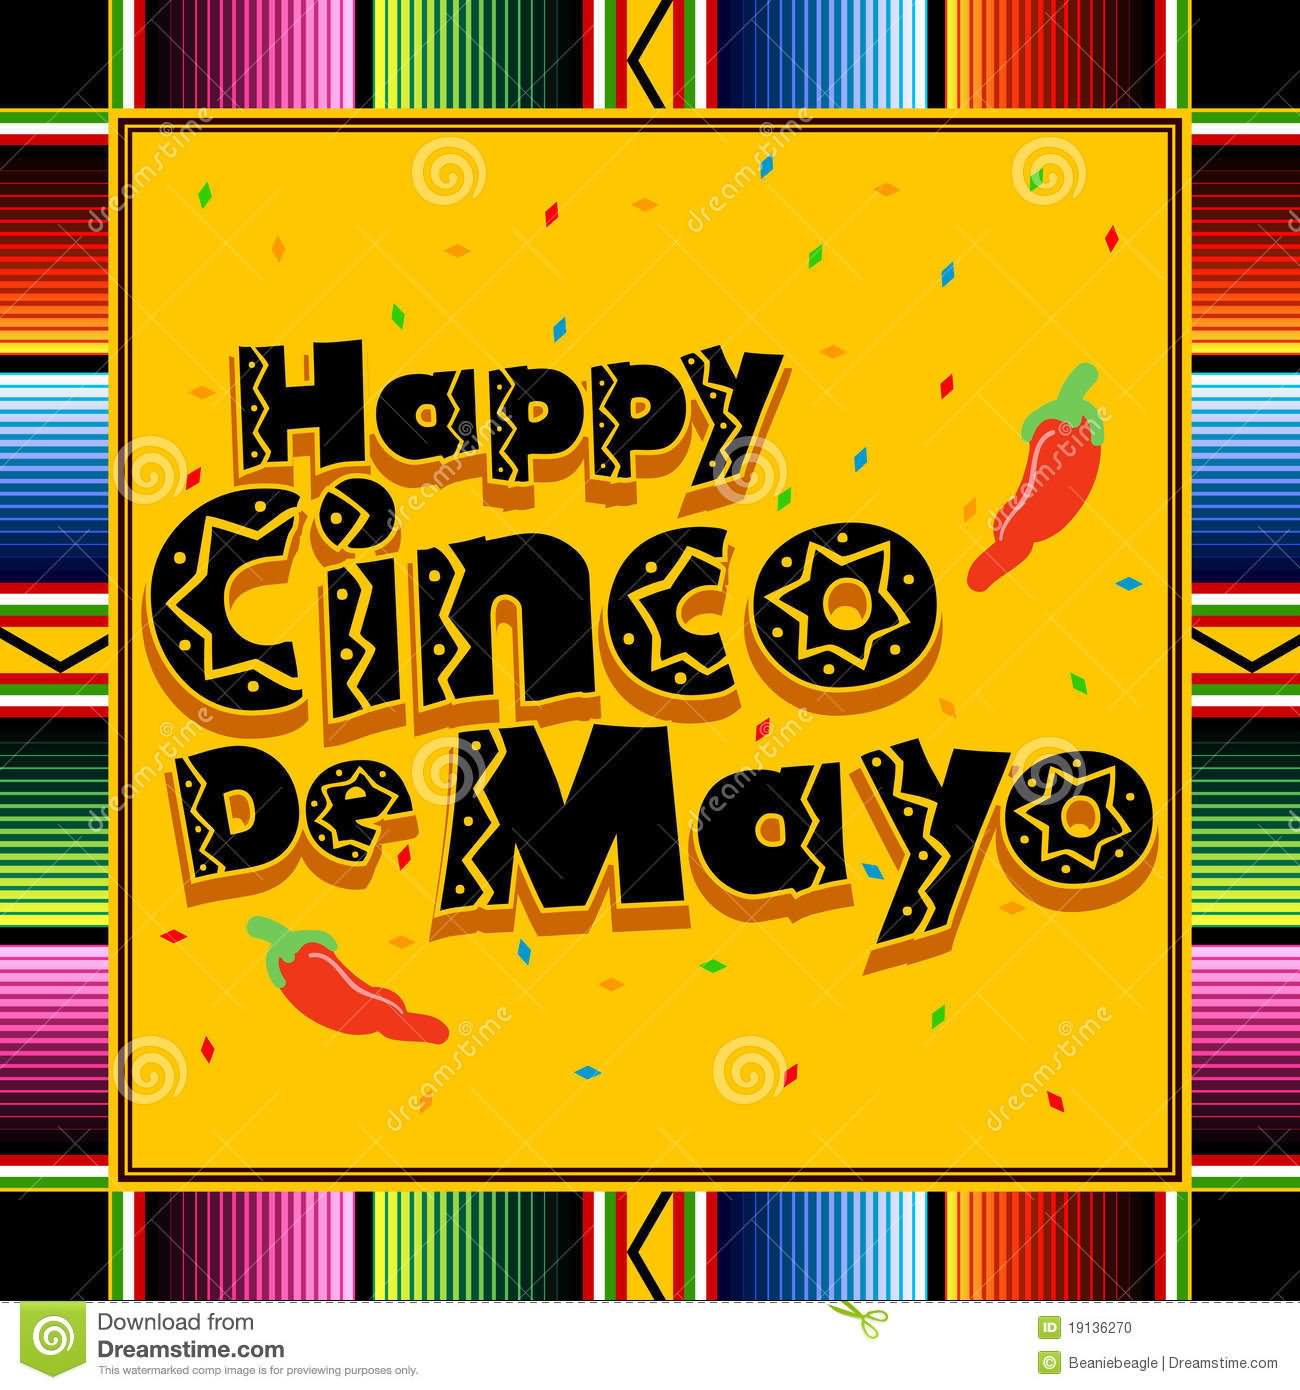 Happy Cinco de Mayo Greetings Image